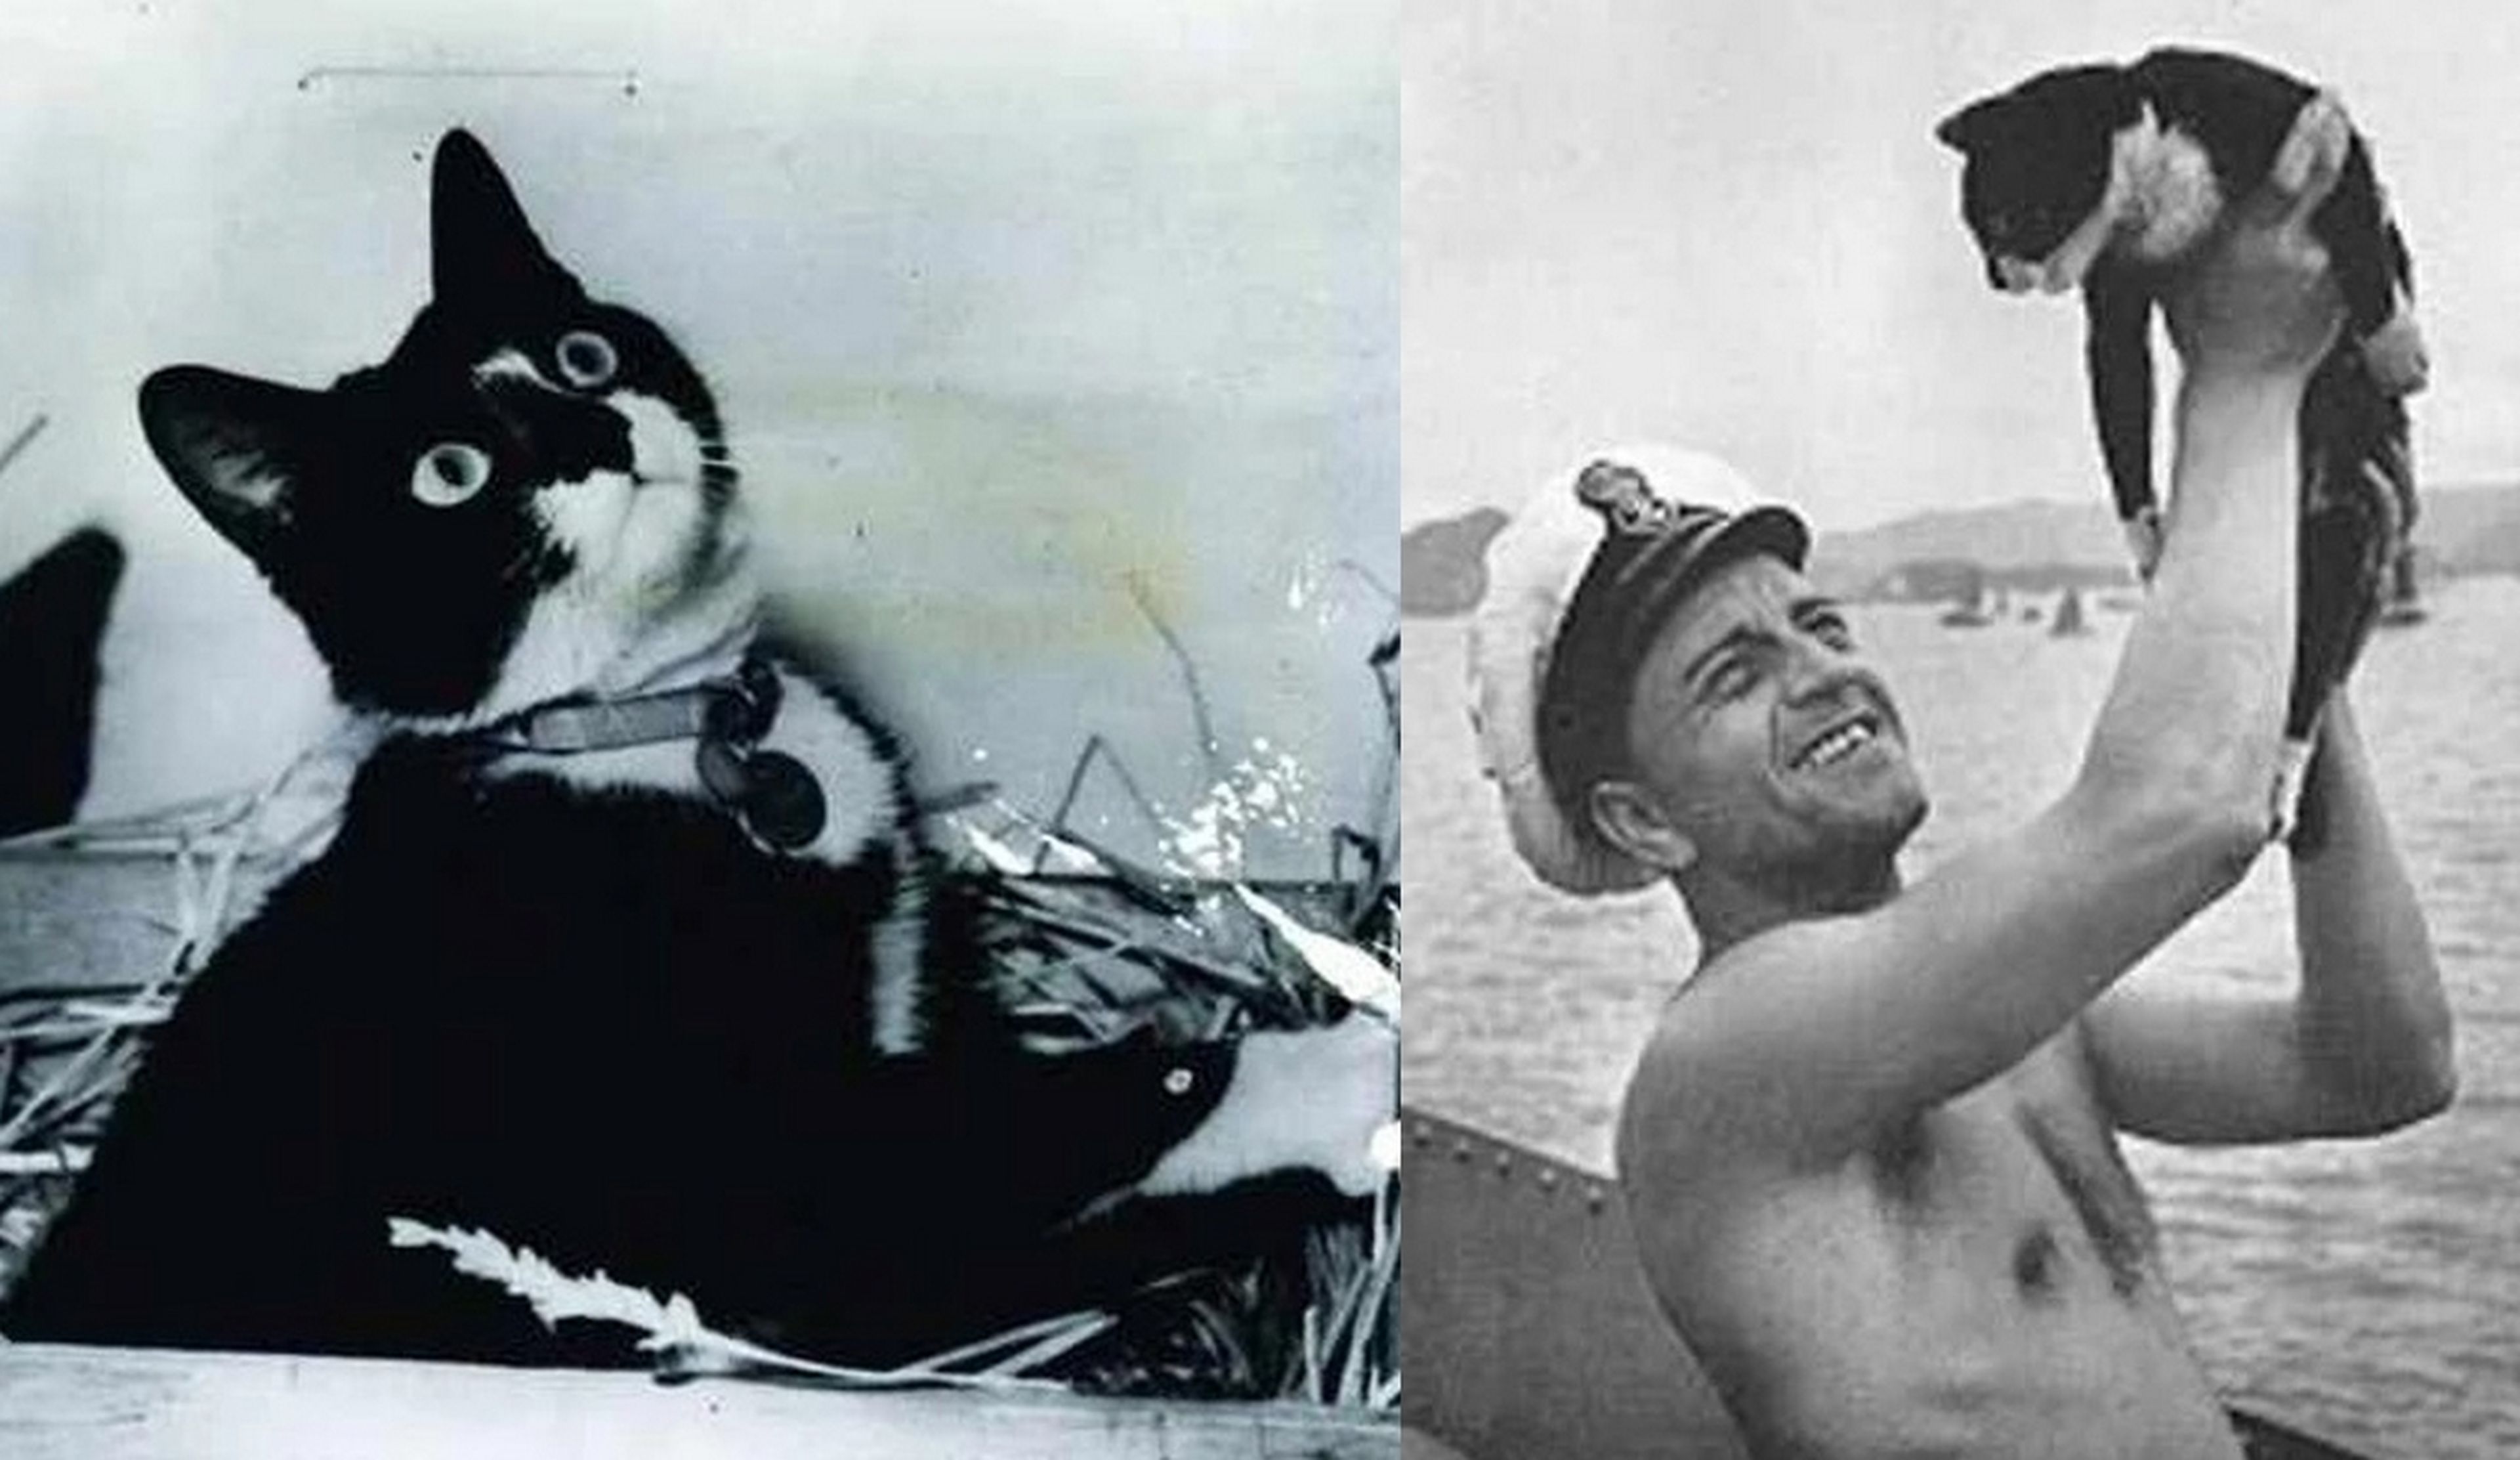 Sam el Insumergible, el gato que sobrevivió a tres hundimientos de buques en la Segunda Guerra Mundial